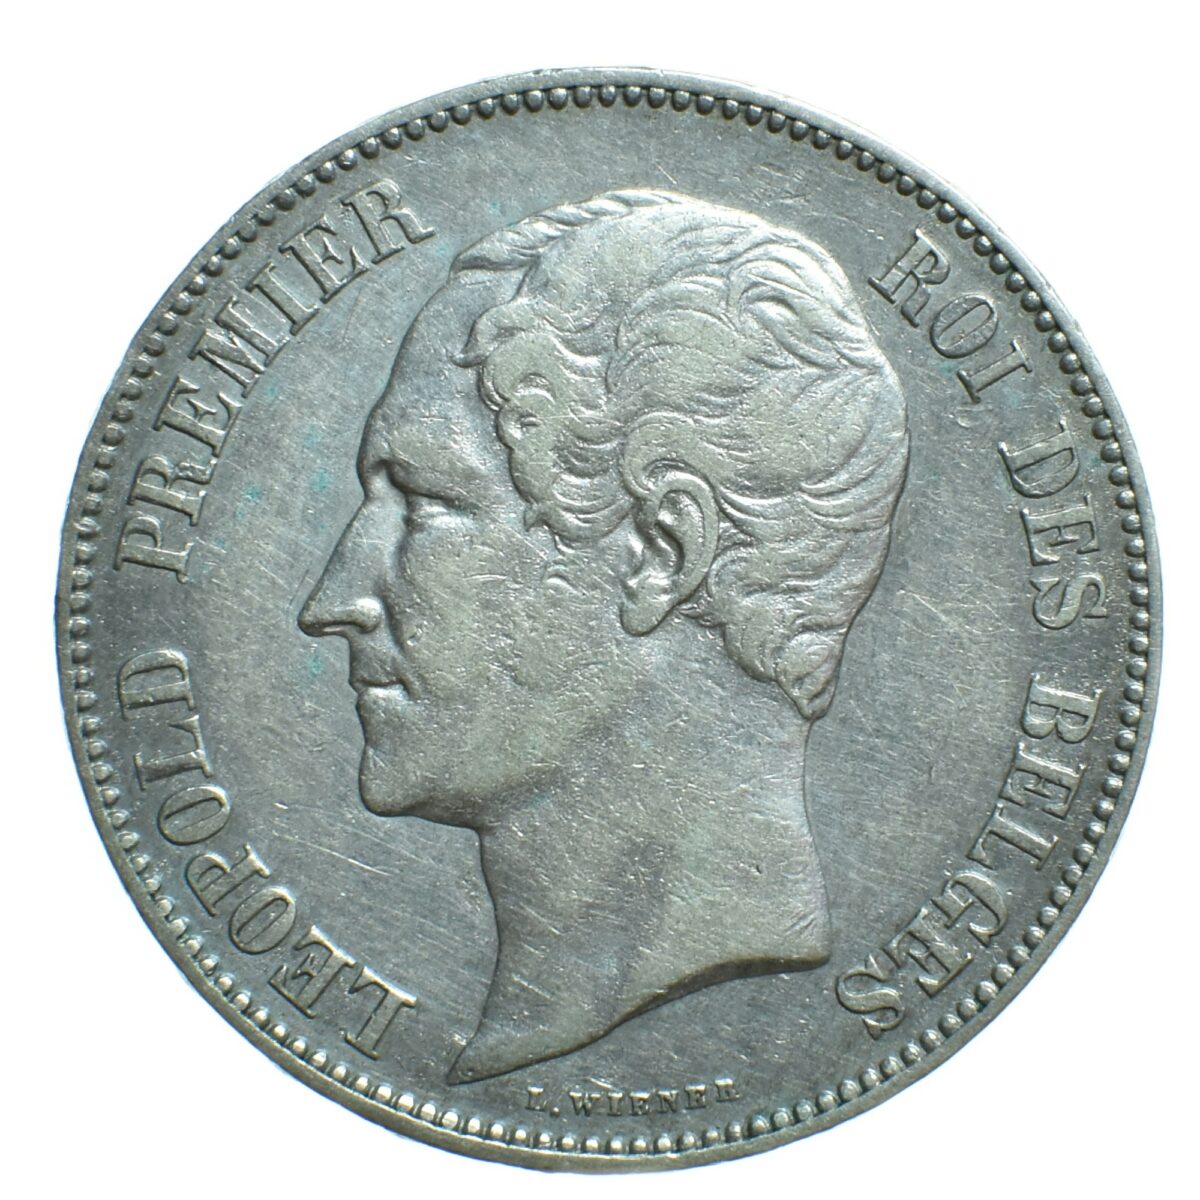 5 francs belgique 1858 avers 110